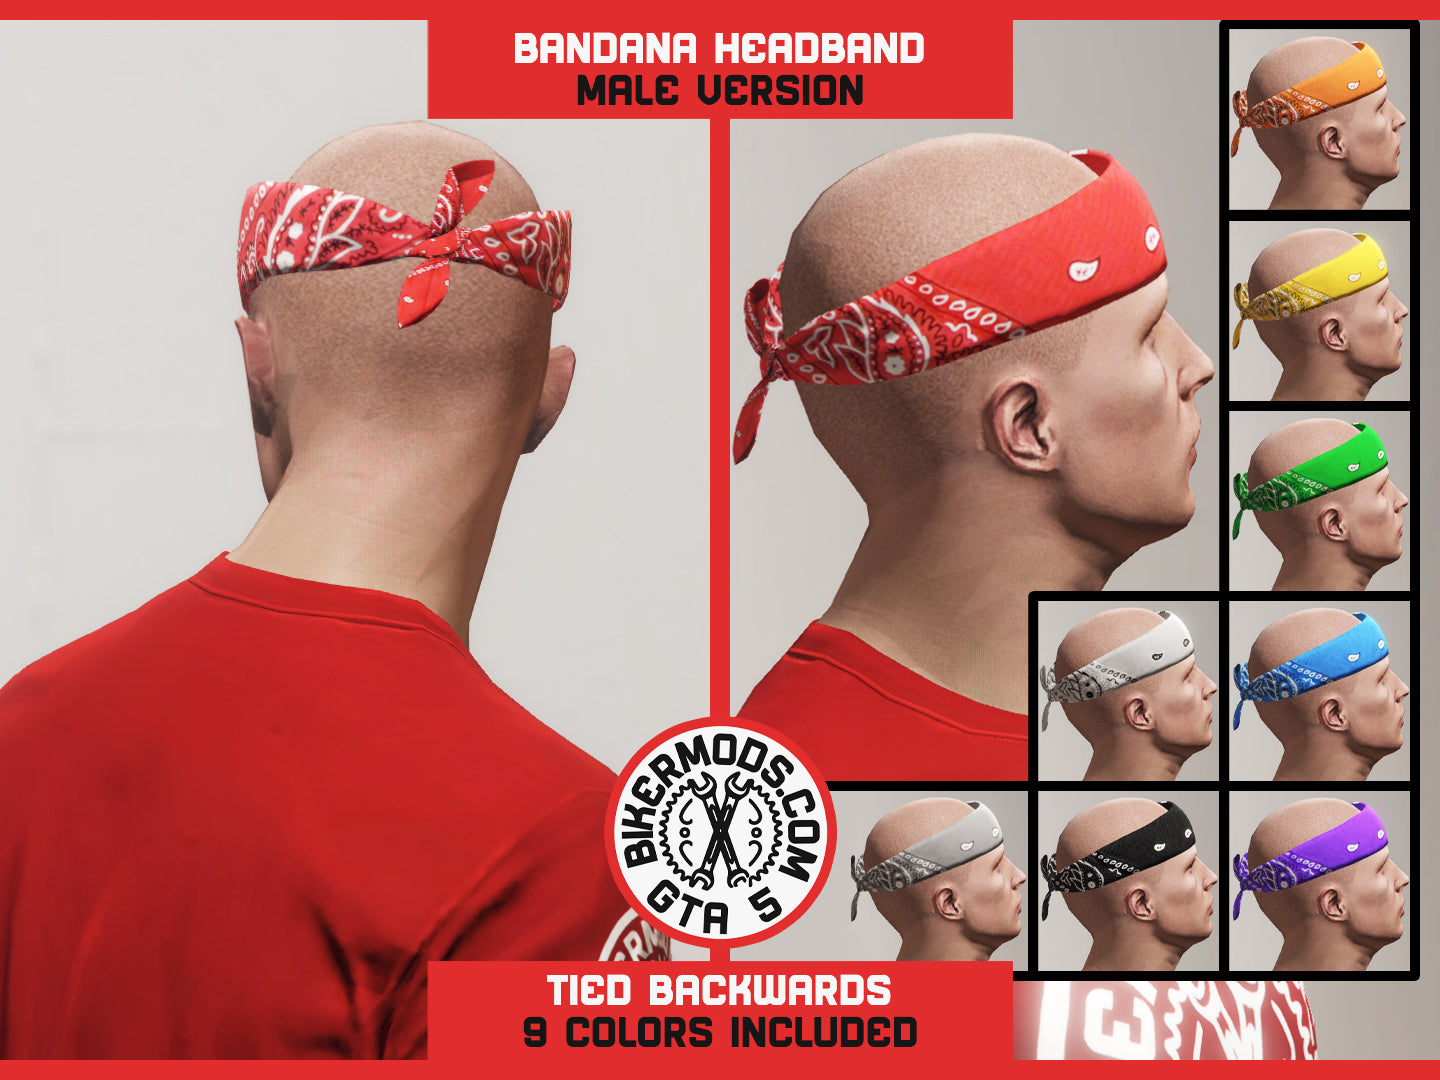 Bandana Headband Tied Backwards (Male)